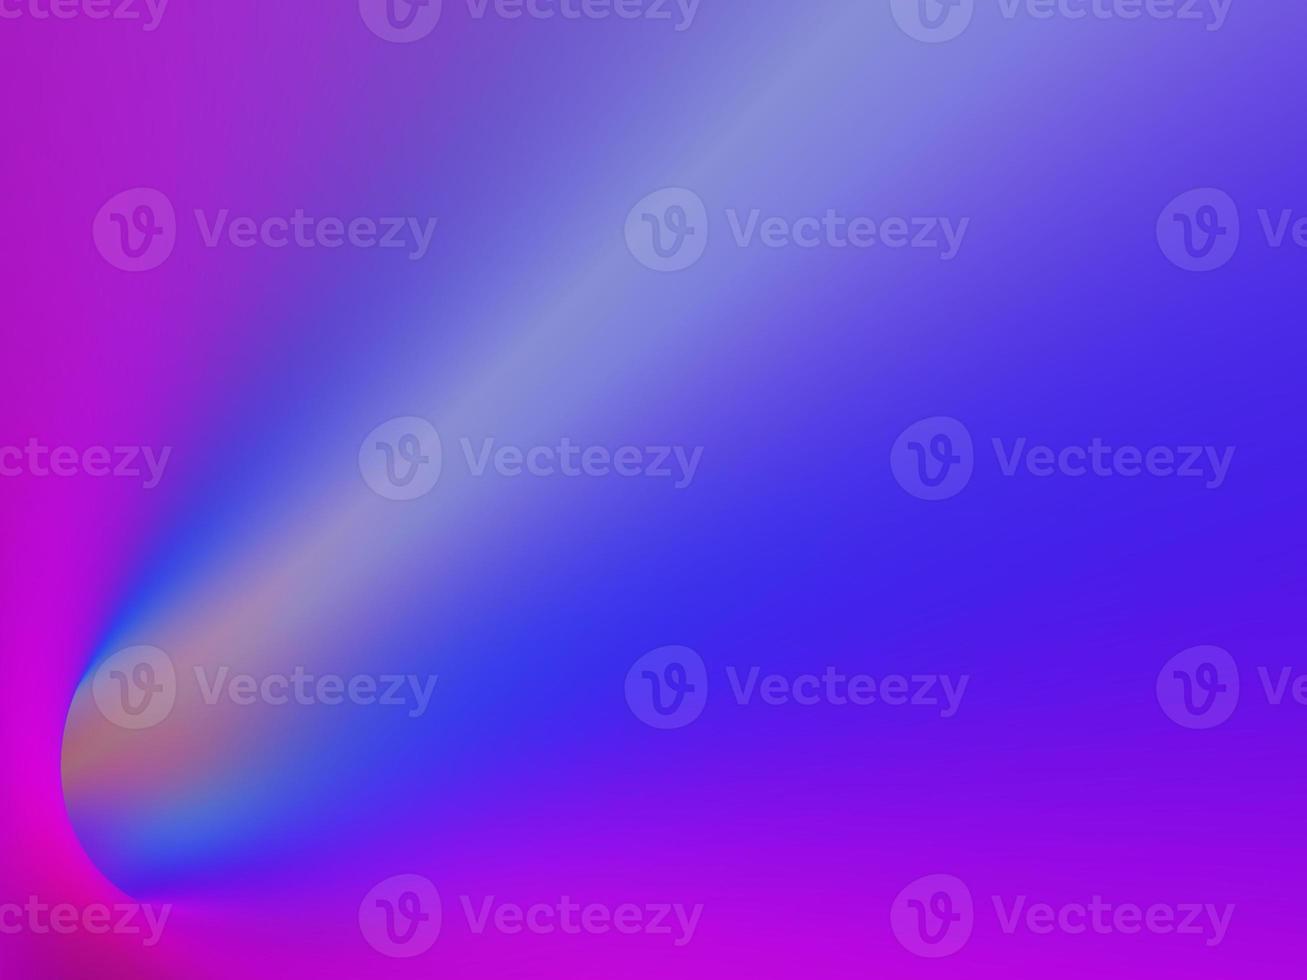 fondo de gradiente cósmico en blanco. textura abstracta del cielo púrpura borrosa. desenfoque de luz rosa. adecuado para pancartas, desolladores, diseños web, fondos de pantalla foto